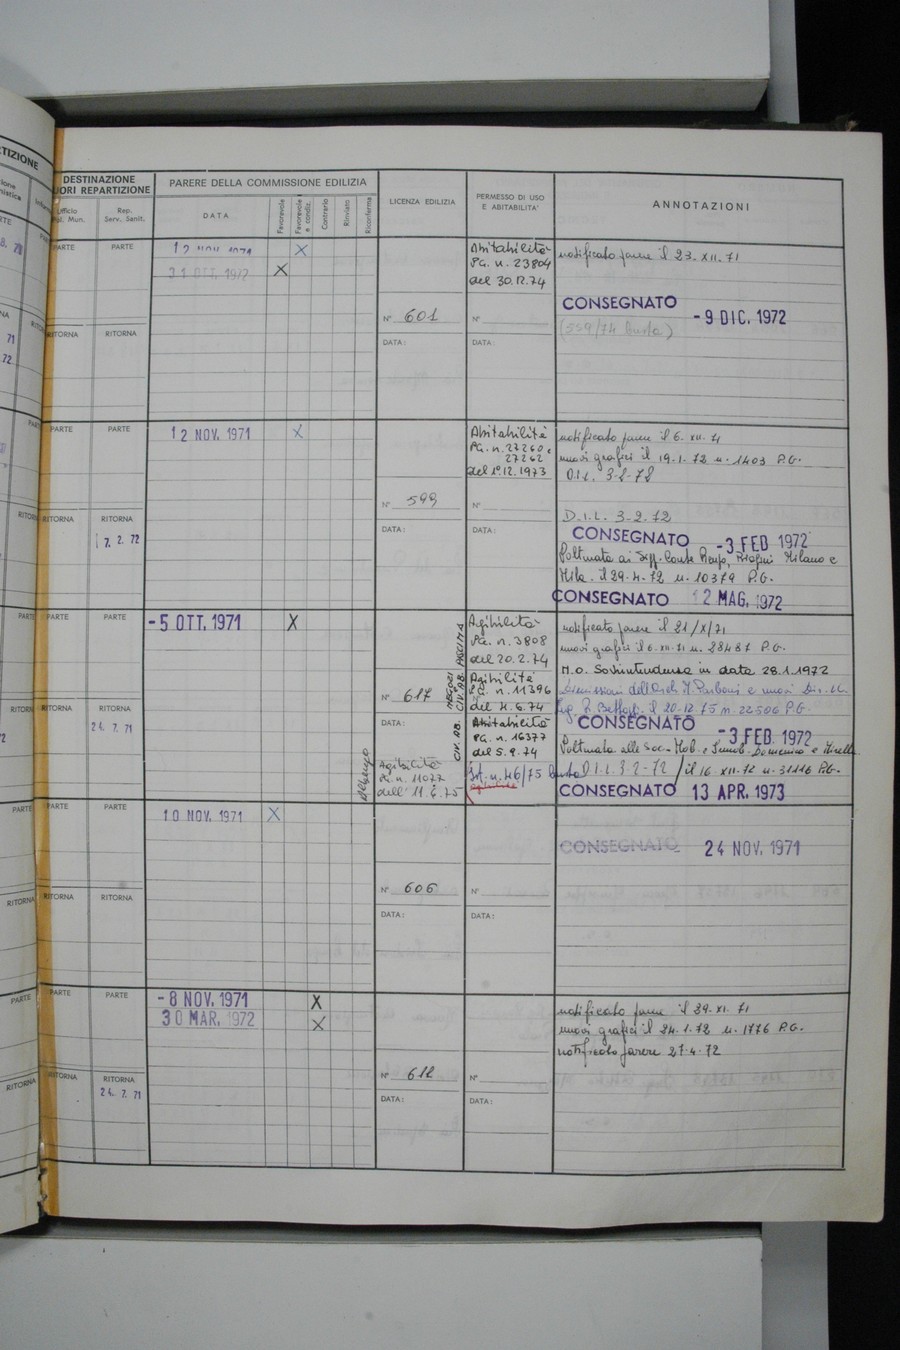 Foto del lato destro del registro con i dati della pratica 563/1971